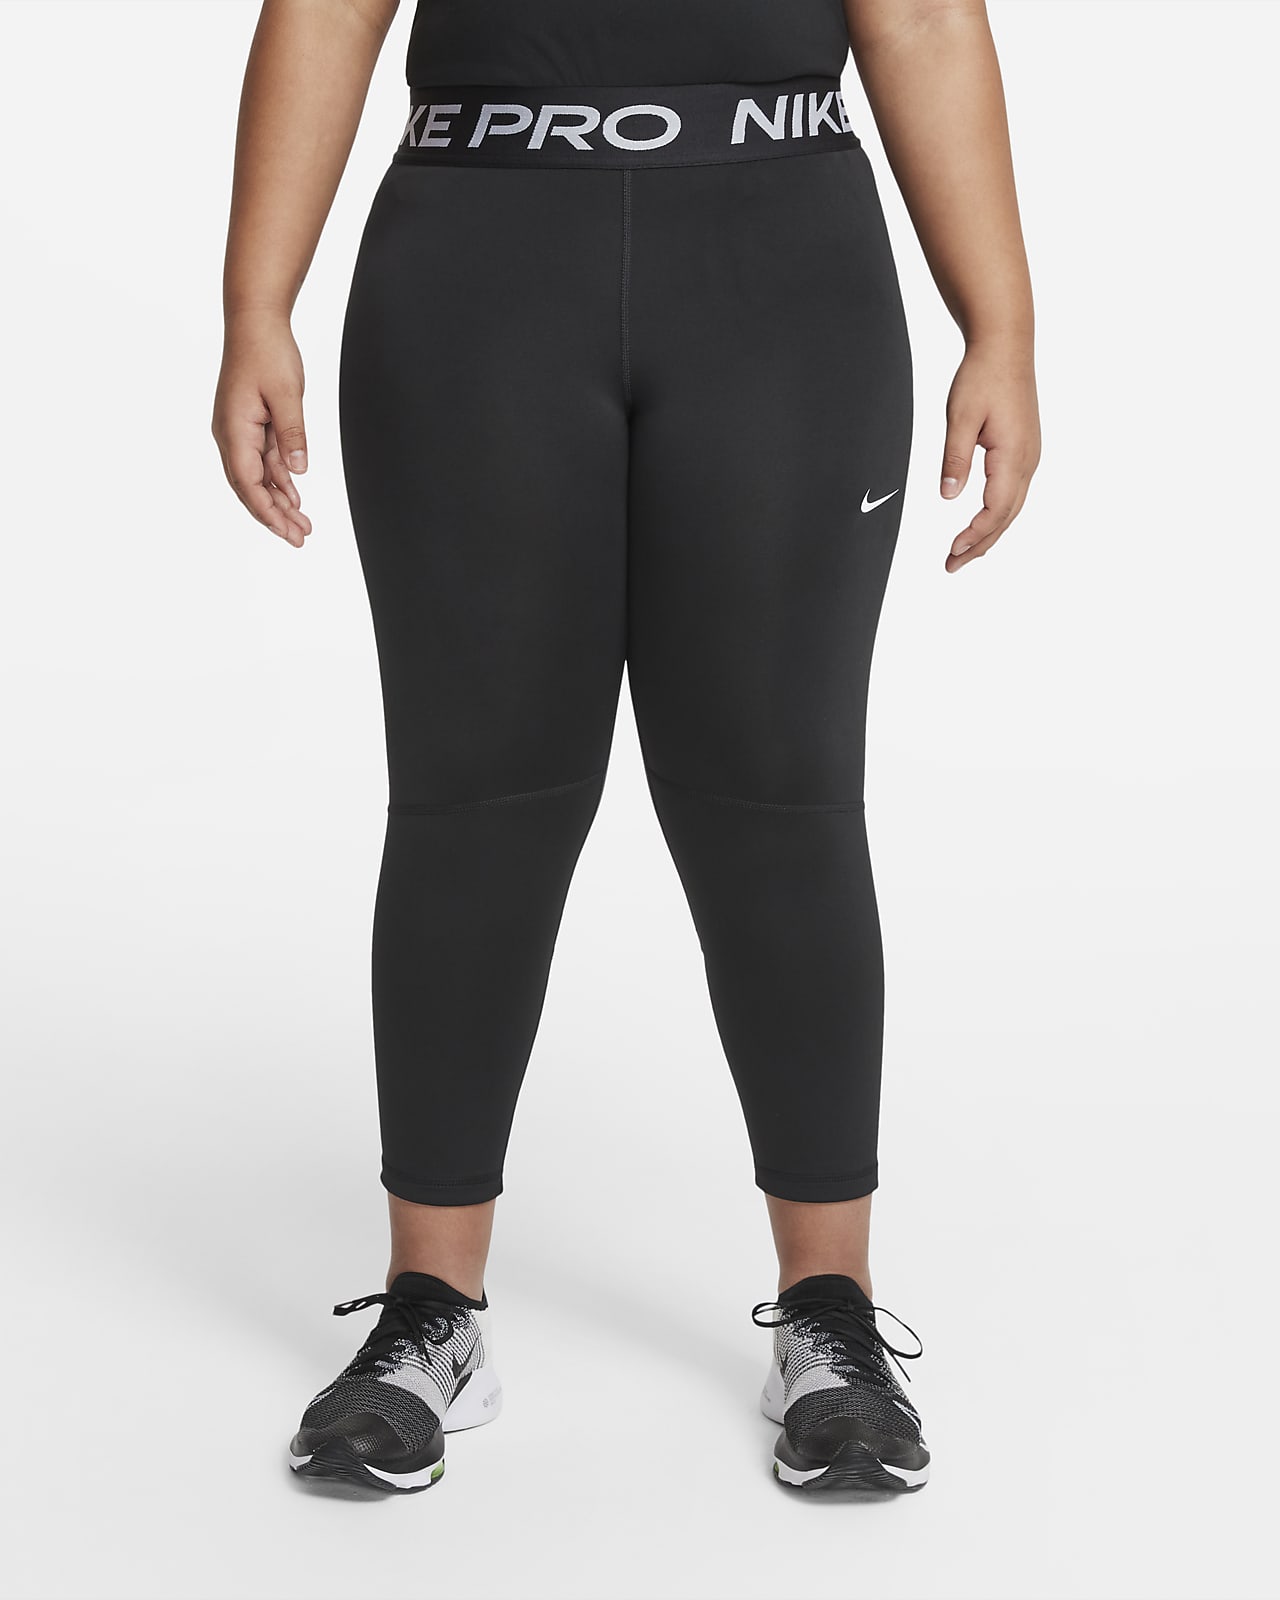 Nike Capri Leggings, Back zipper, Drawstring, Size 